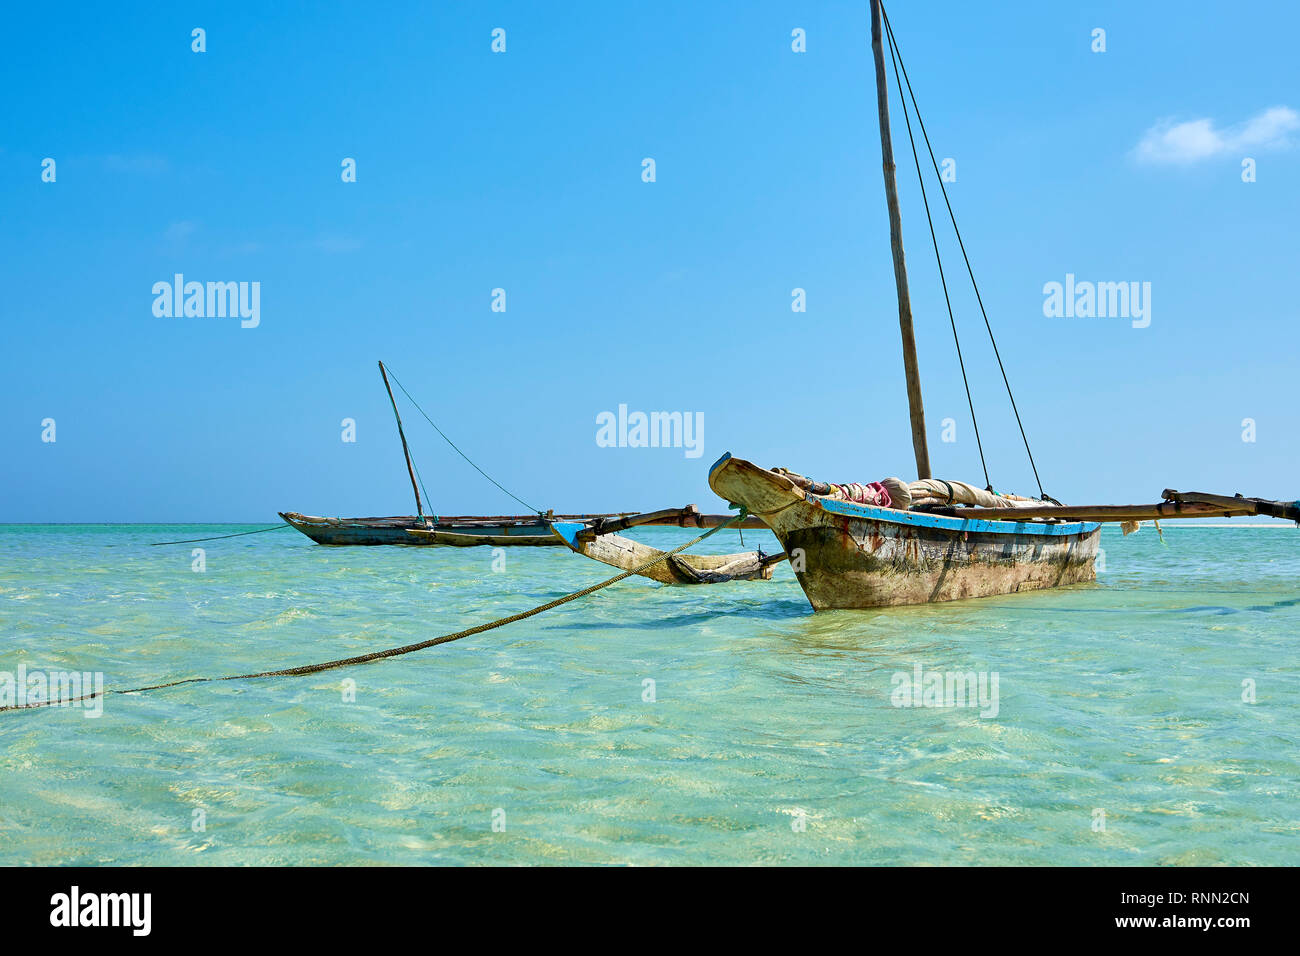 Avis d'un vieux bateau en bois ou en catamaran, ancré au large de la côte du Kenya en Afrique dans la mer limpide. Ciel bleu. Banque D'Images